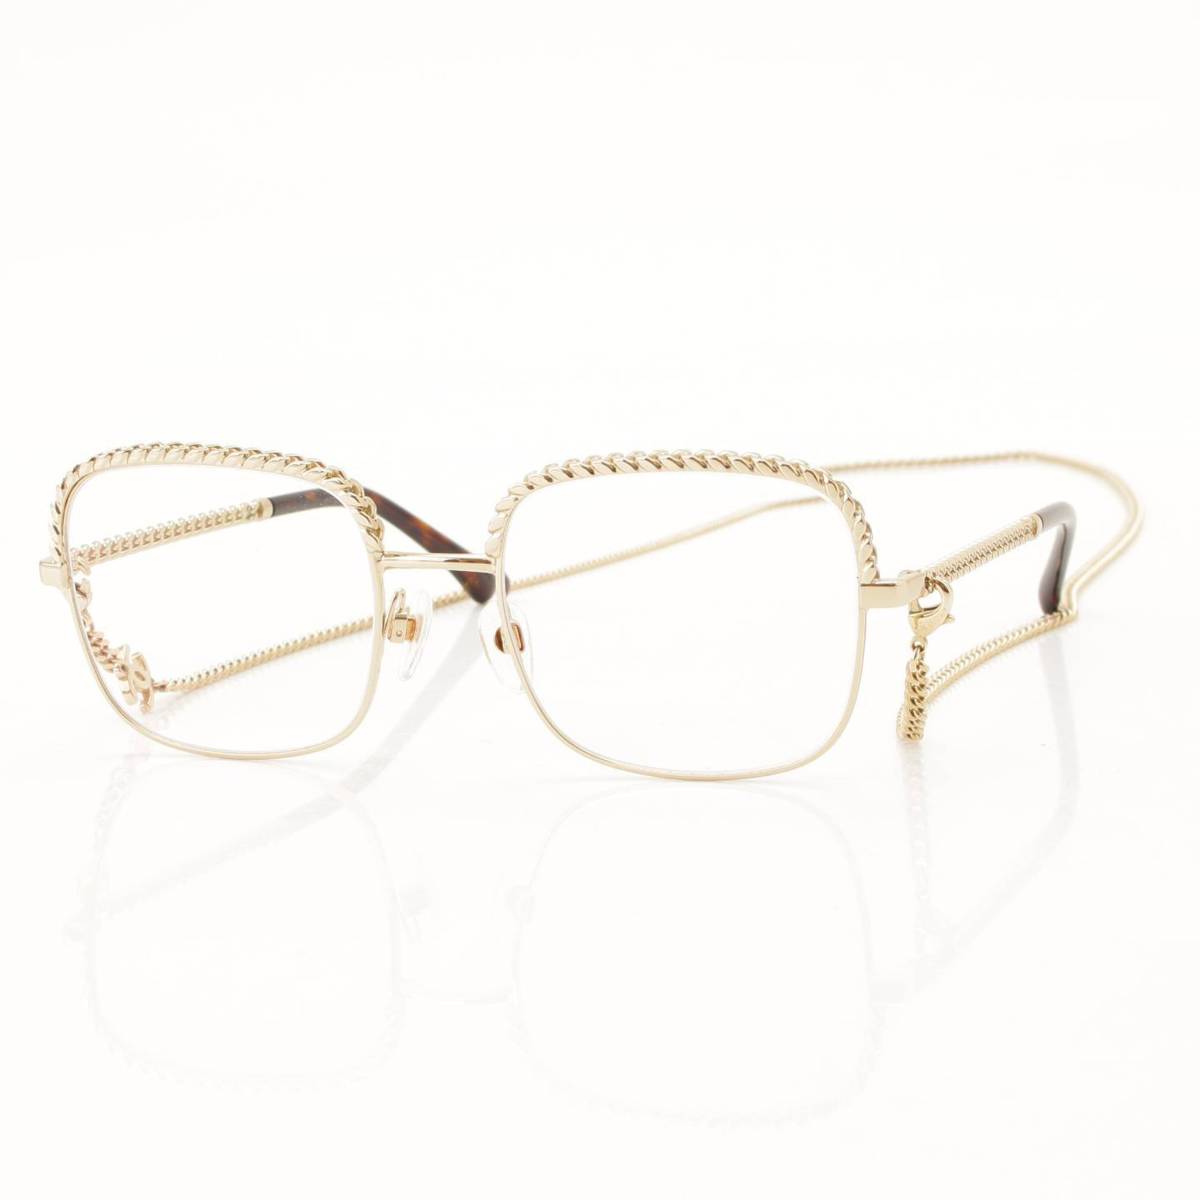 シャネル(Chanel) スクエアシェイプ チェーン付 メガネ 眼鏡 アイウェア ブラウン 52□19